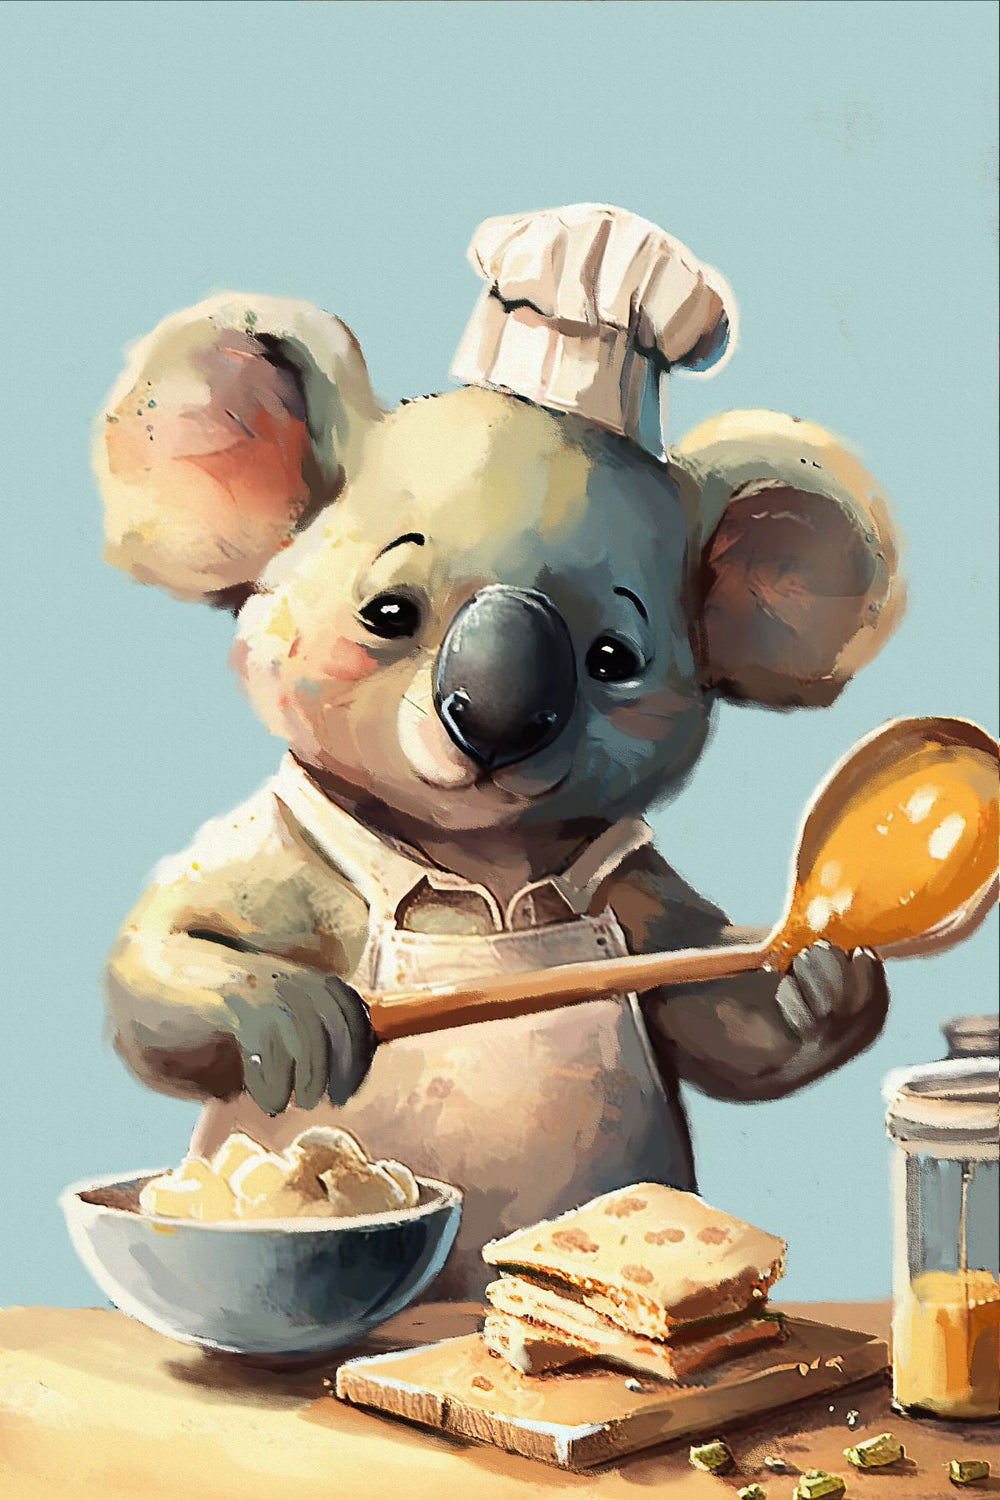 Chef Koala